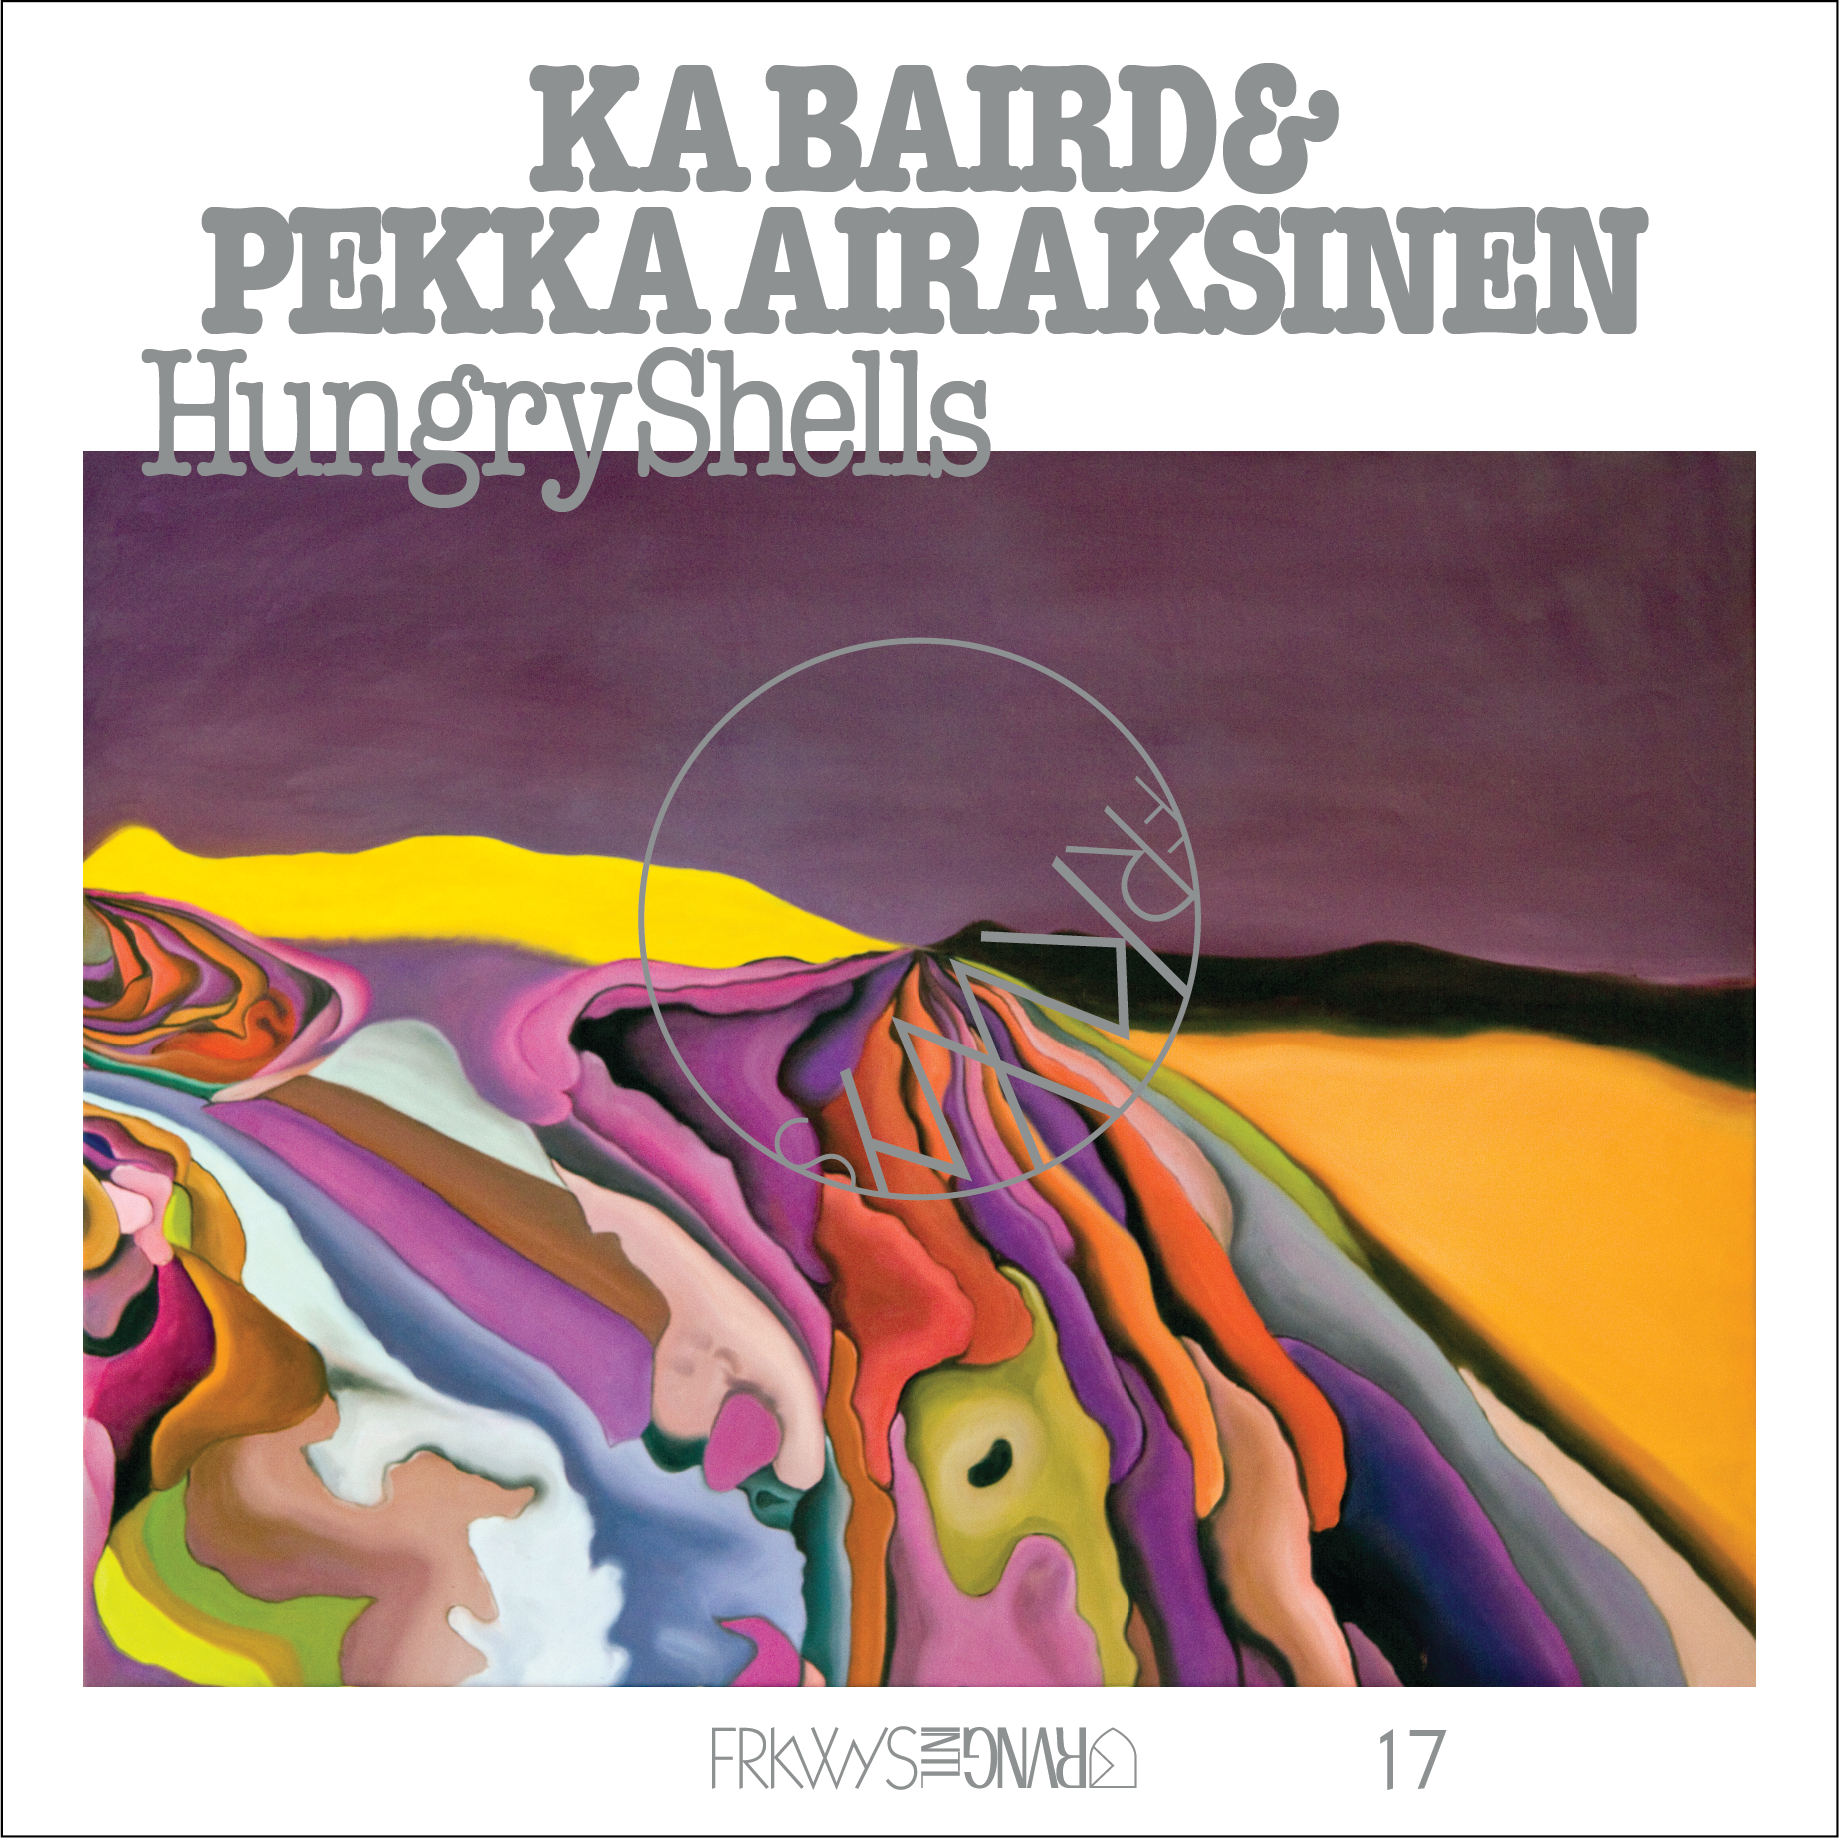 FRKWYS Vol. 17: Ka Baird & Pekka Airaksinen – Hungry Shells